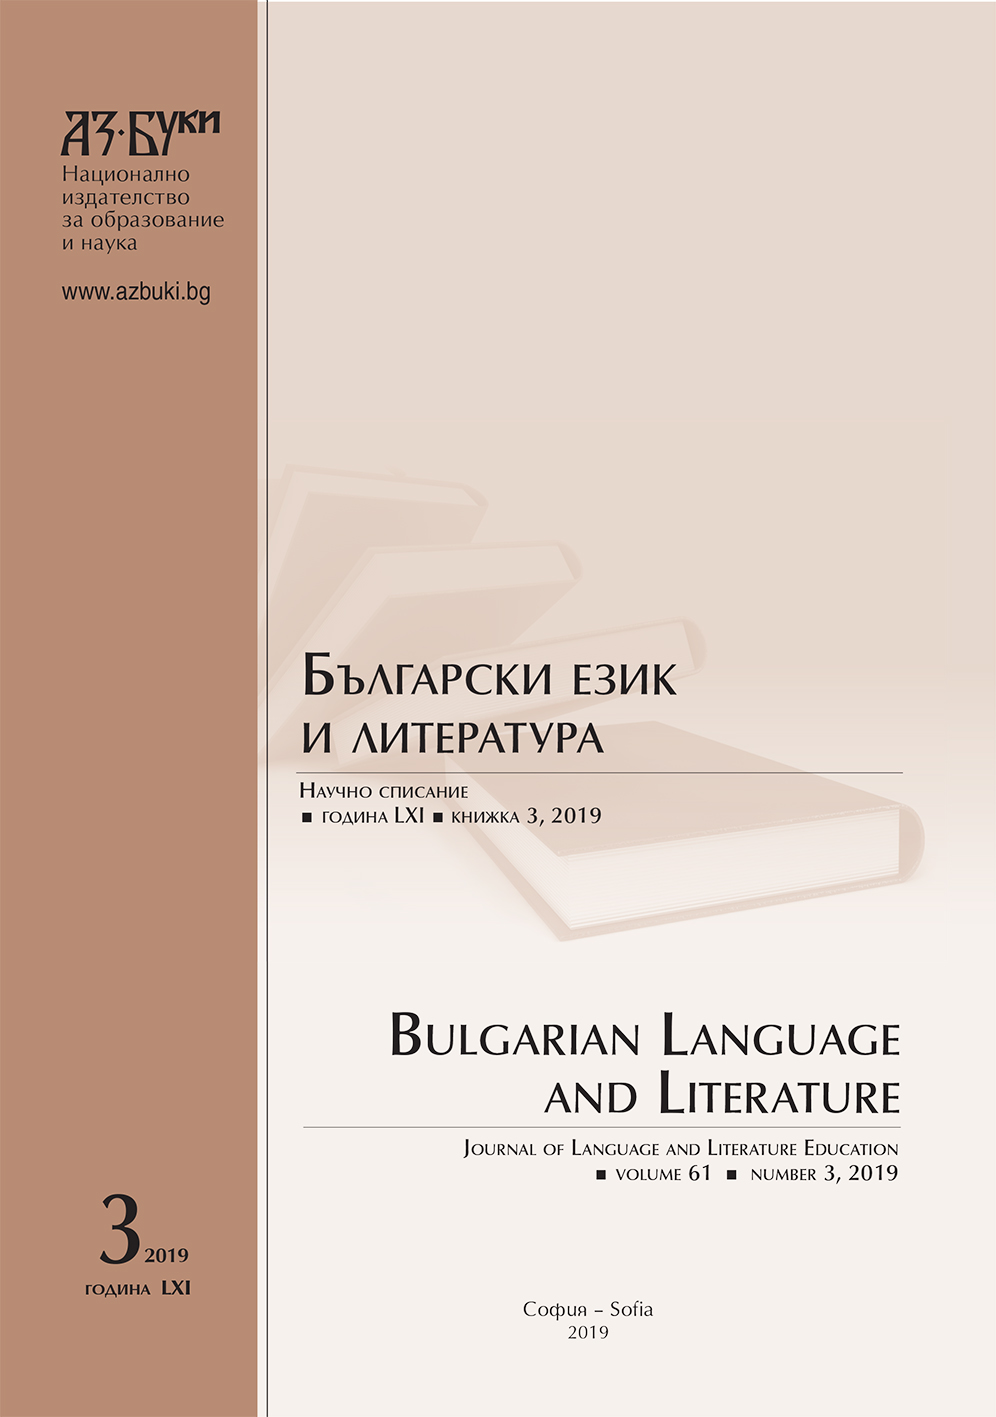 Едно издание на „Митарствата“ от епохата на Българското възраждане